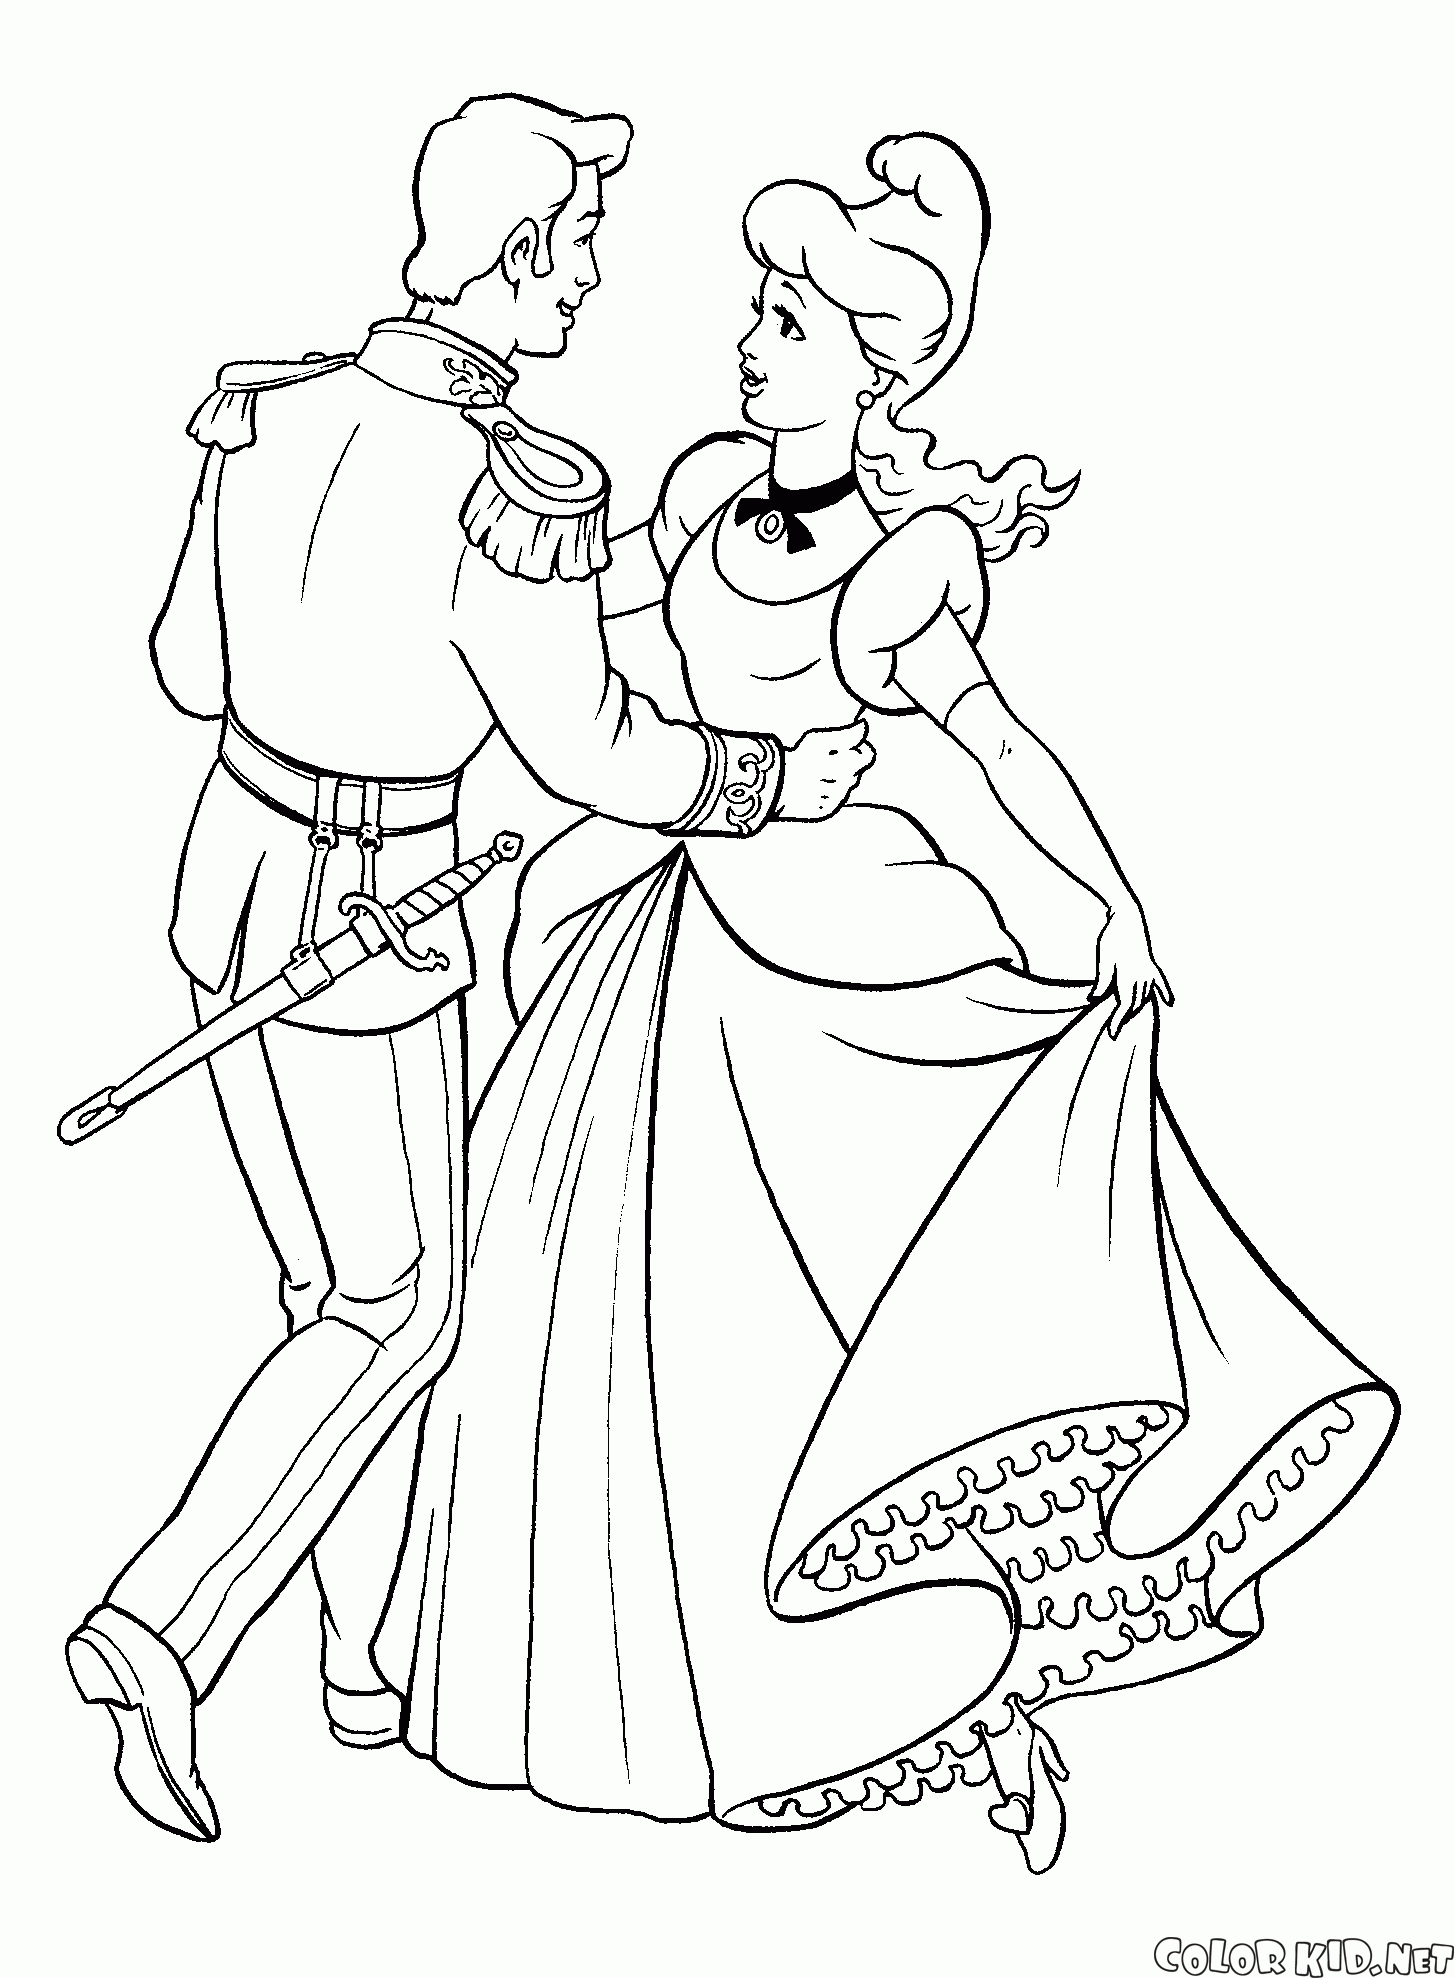 Cenicienta y el príncipe en el baile